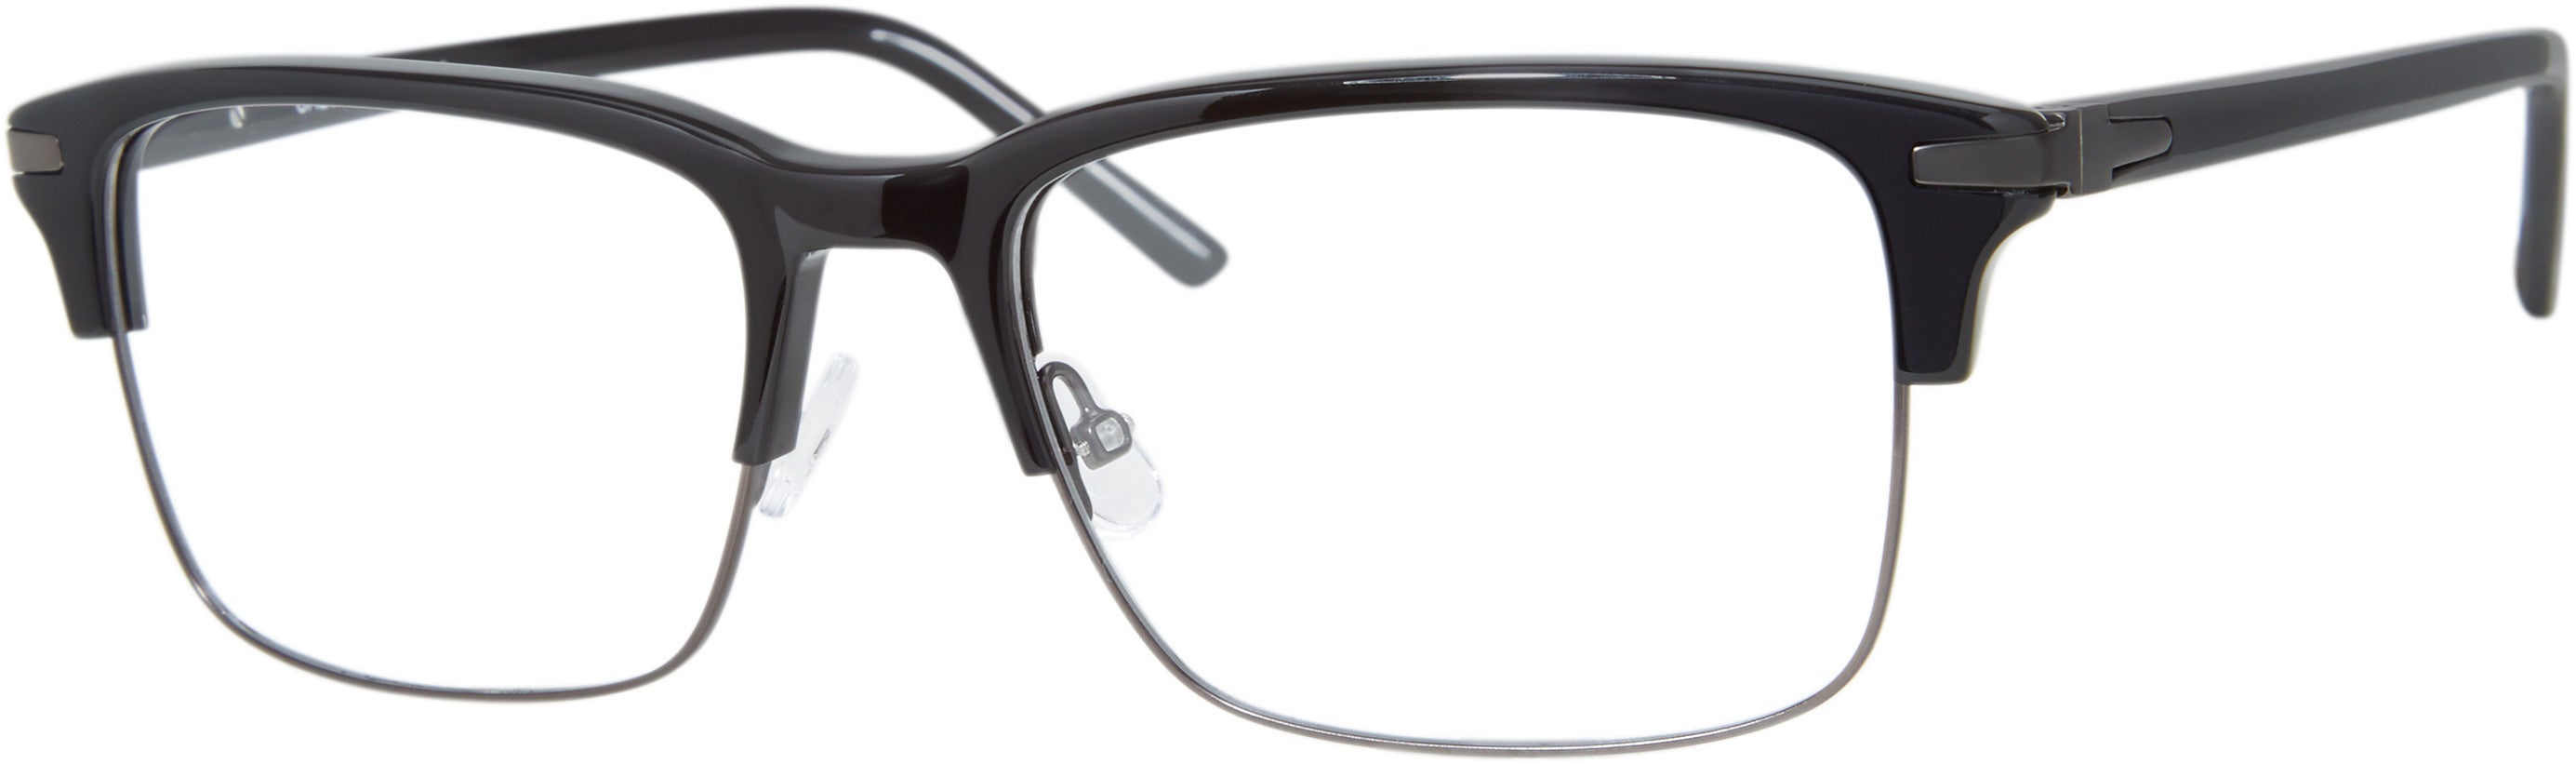  Chesterfield 77XL Rectangular Eyeglasses 0807-0807  Black (00 Demo Lens)